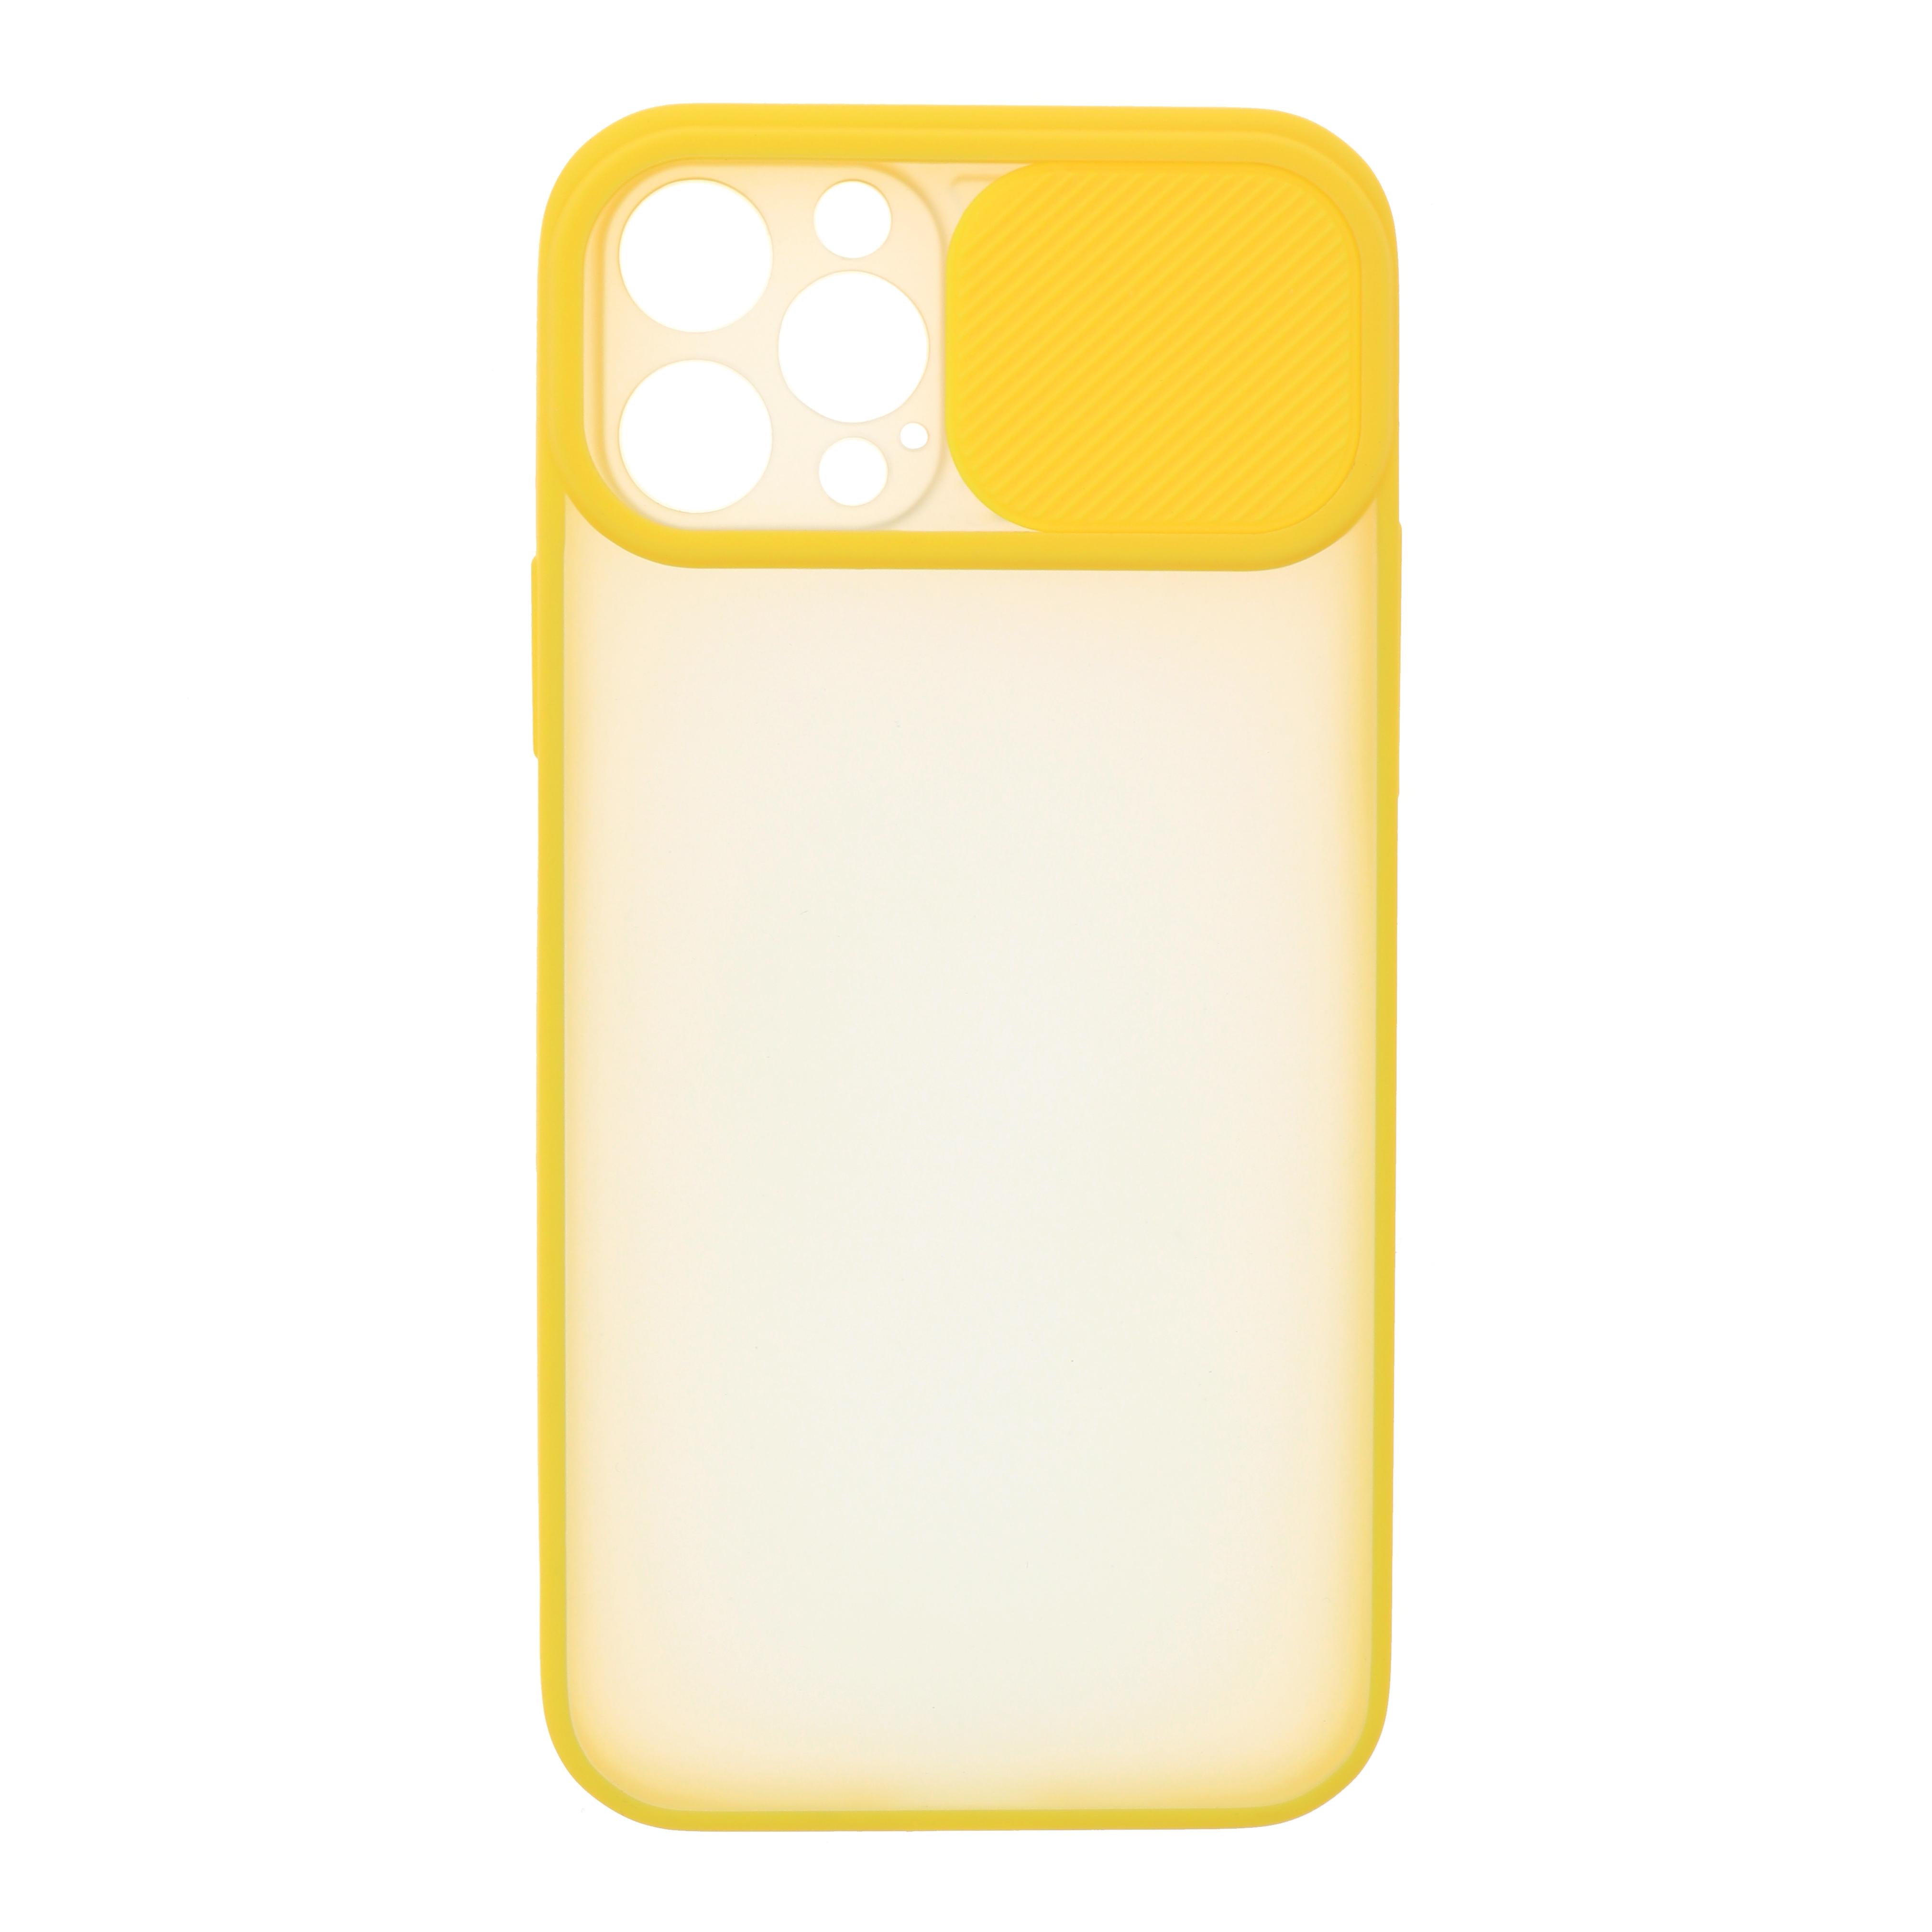 Фото 1 Силиконовый чехол для iPhone 12 со шторкой защищающей камеру CG Yellow